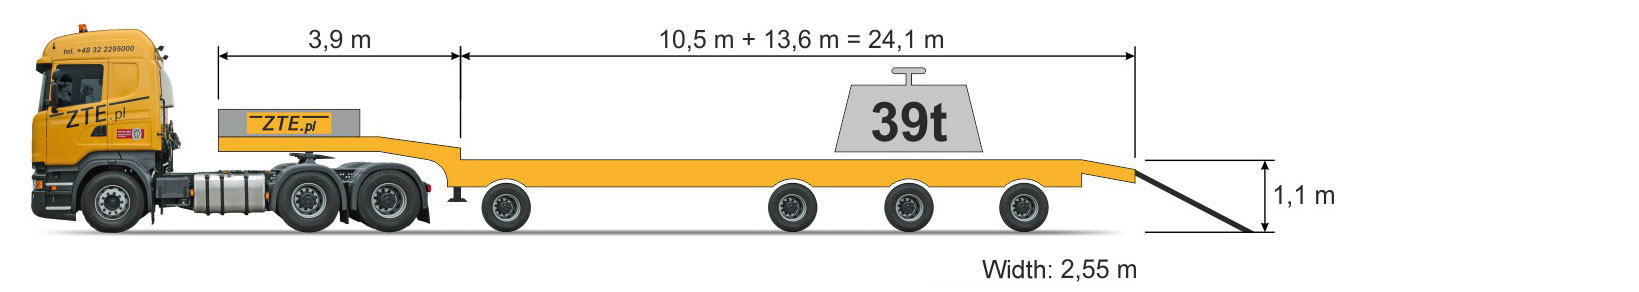 4-axle Semi type semi-trailer